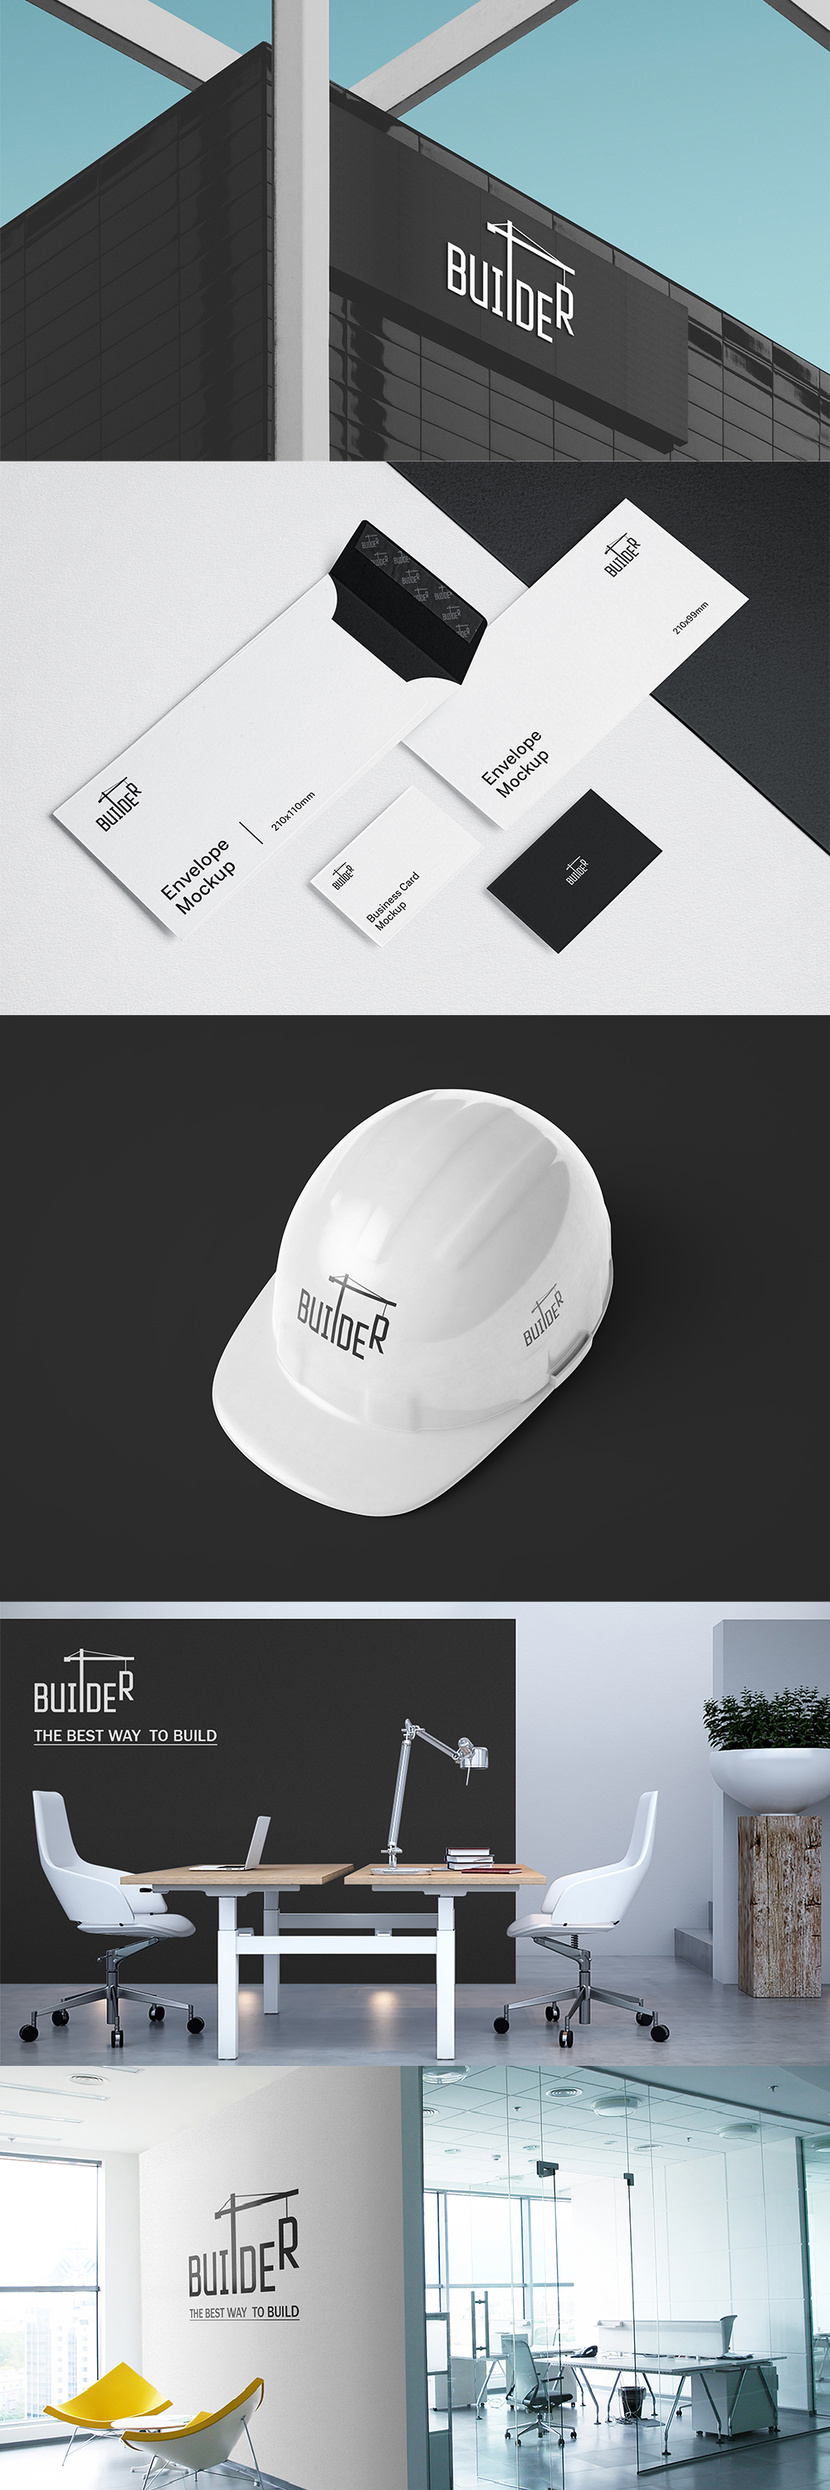 Фирменный стиль и лого для Вашей компании - Логотип и фирменный стиль для строительной компании